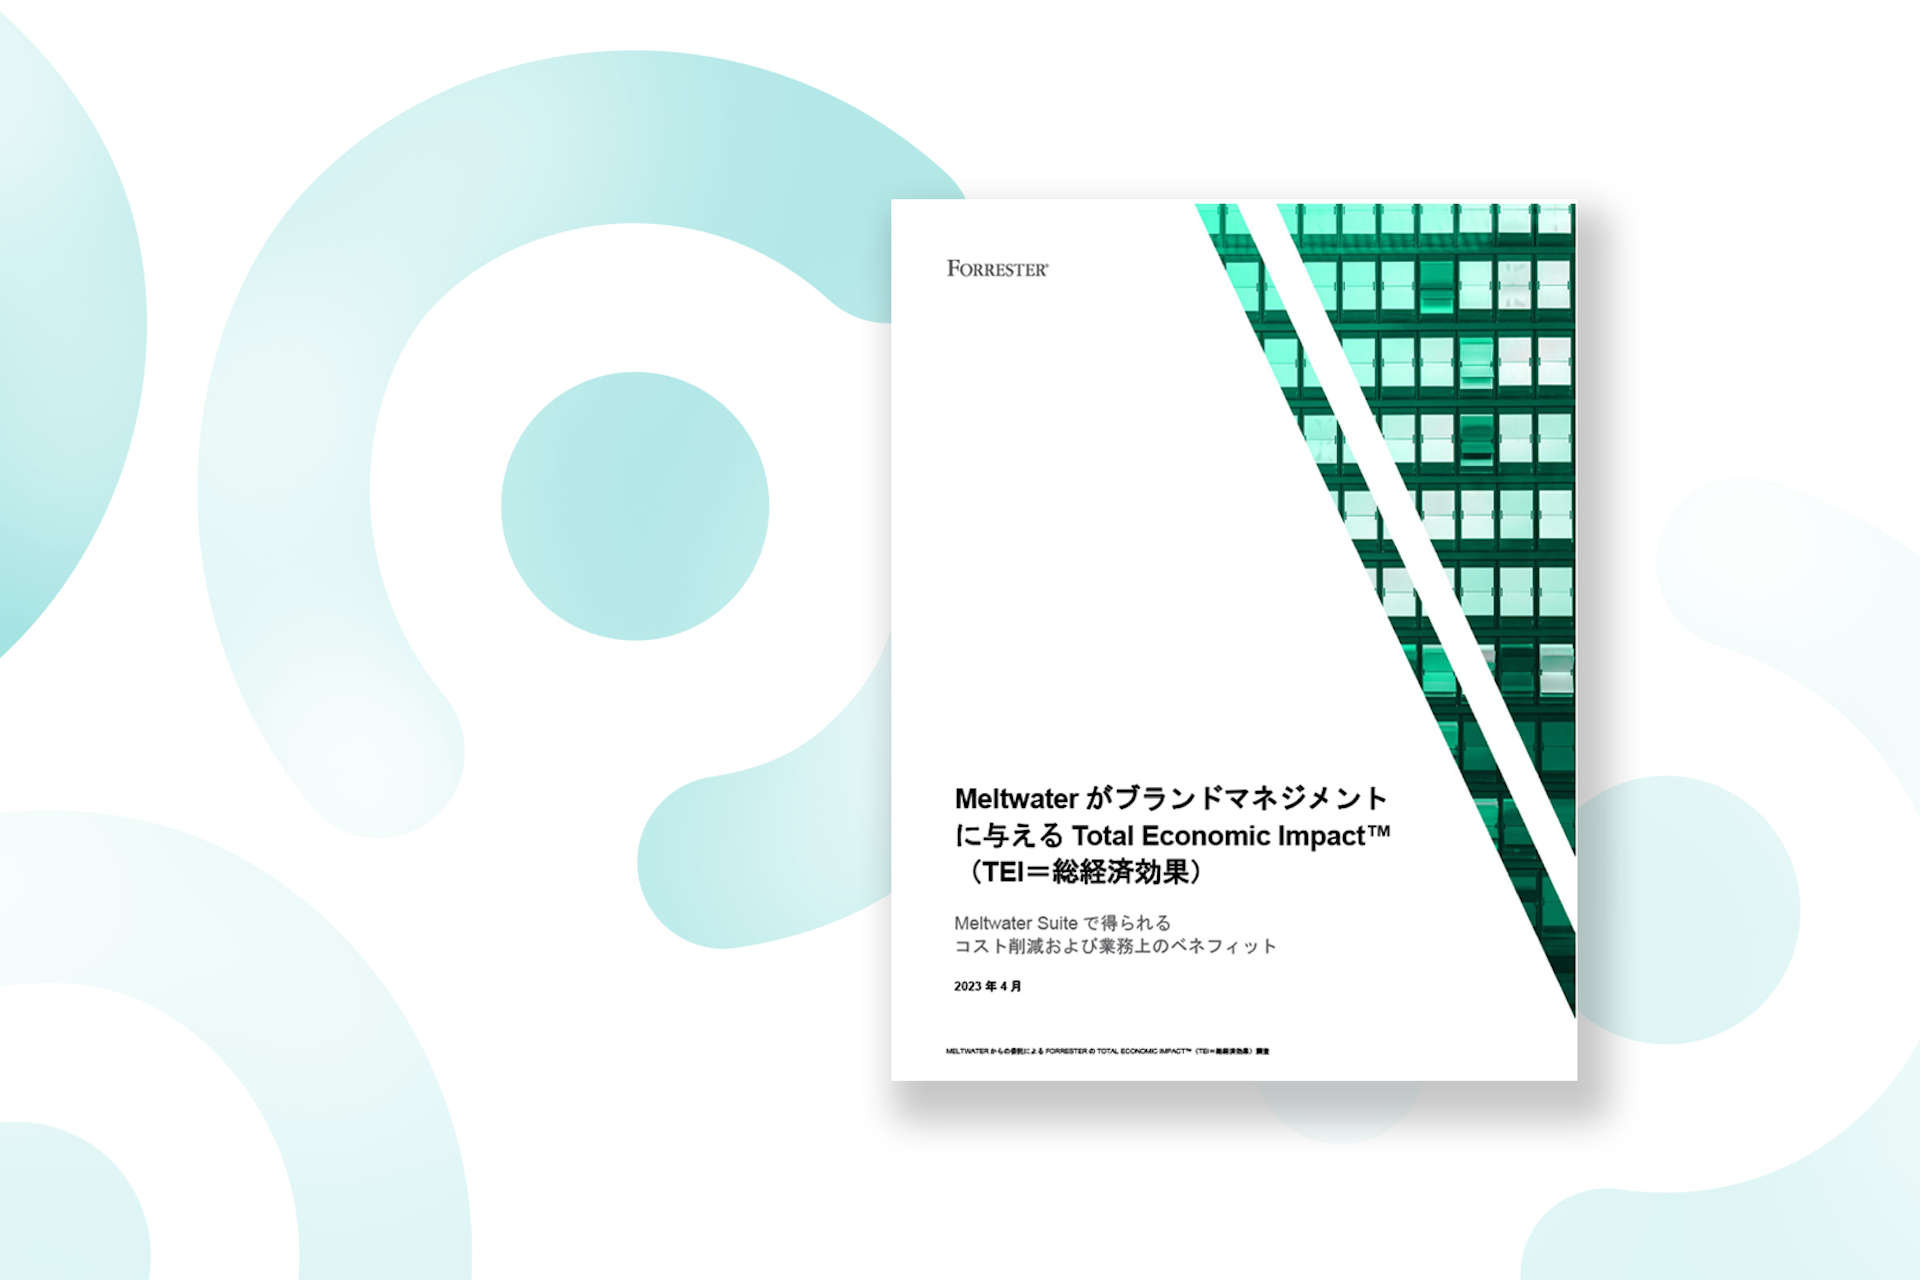 Forrester総経済効果レポートが白と緑の背景に配置されている画像